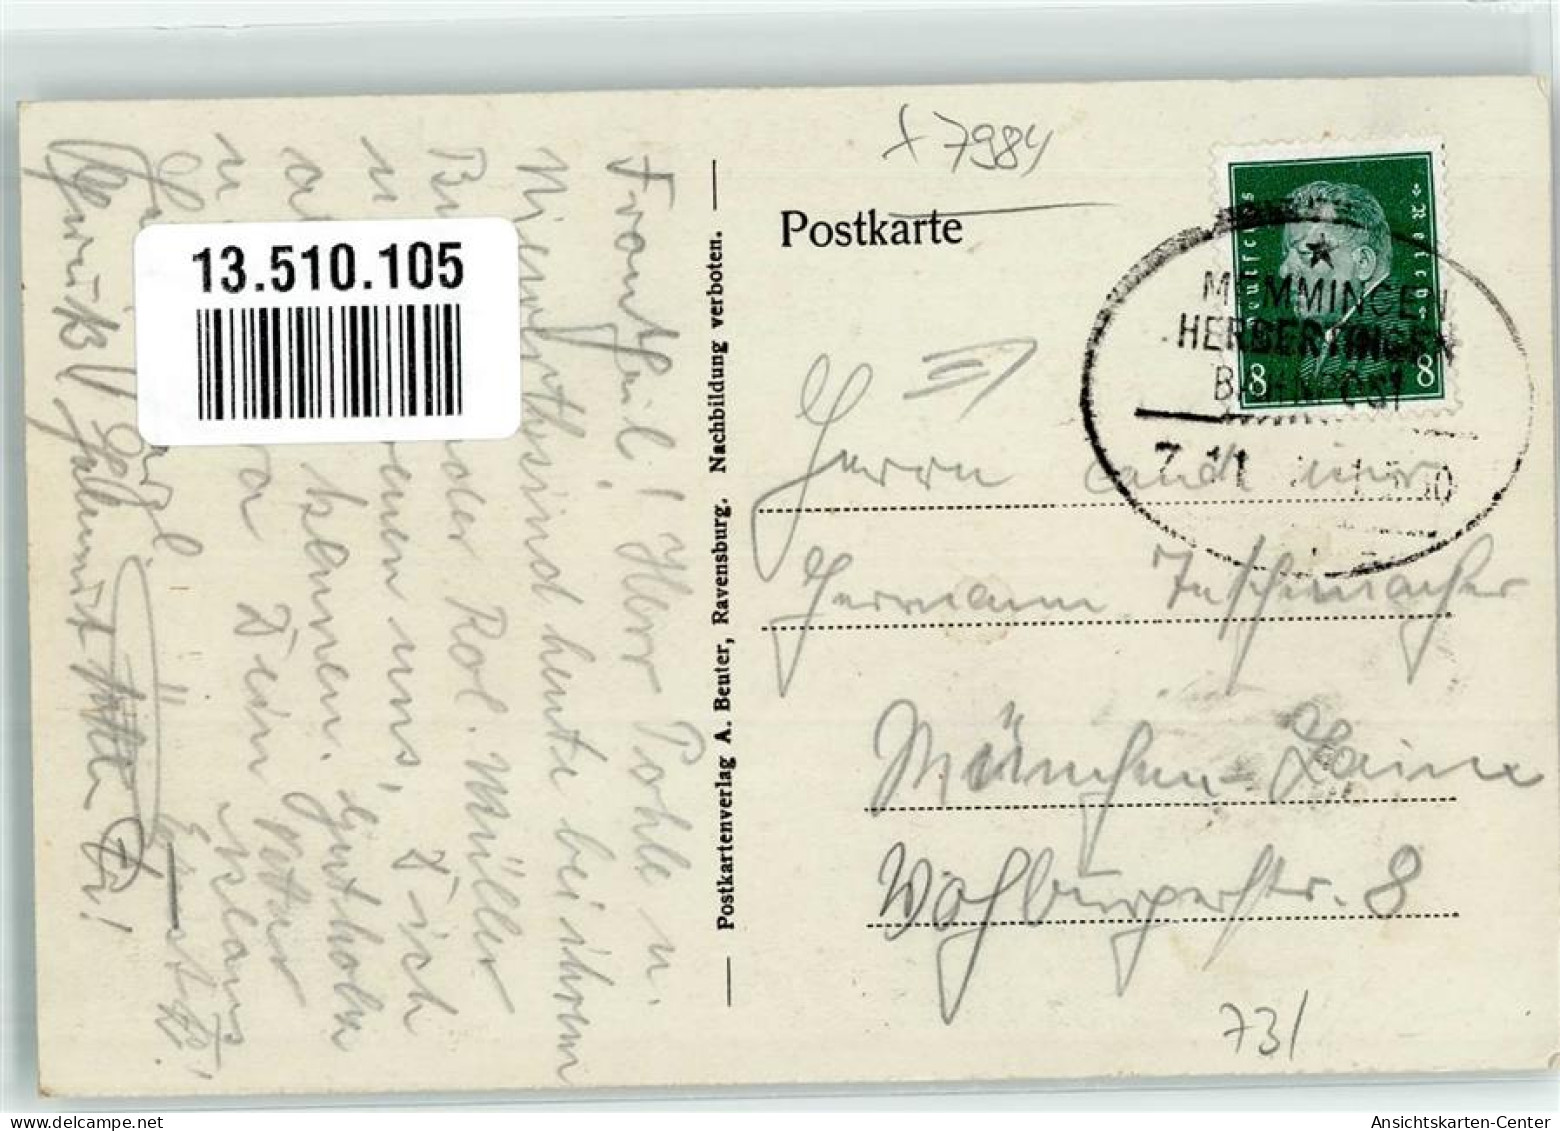 13510105 - Mochenwangen - Ravensburg